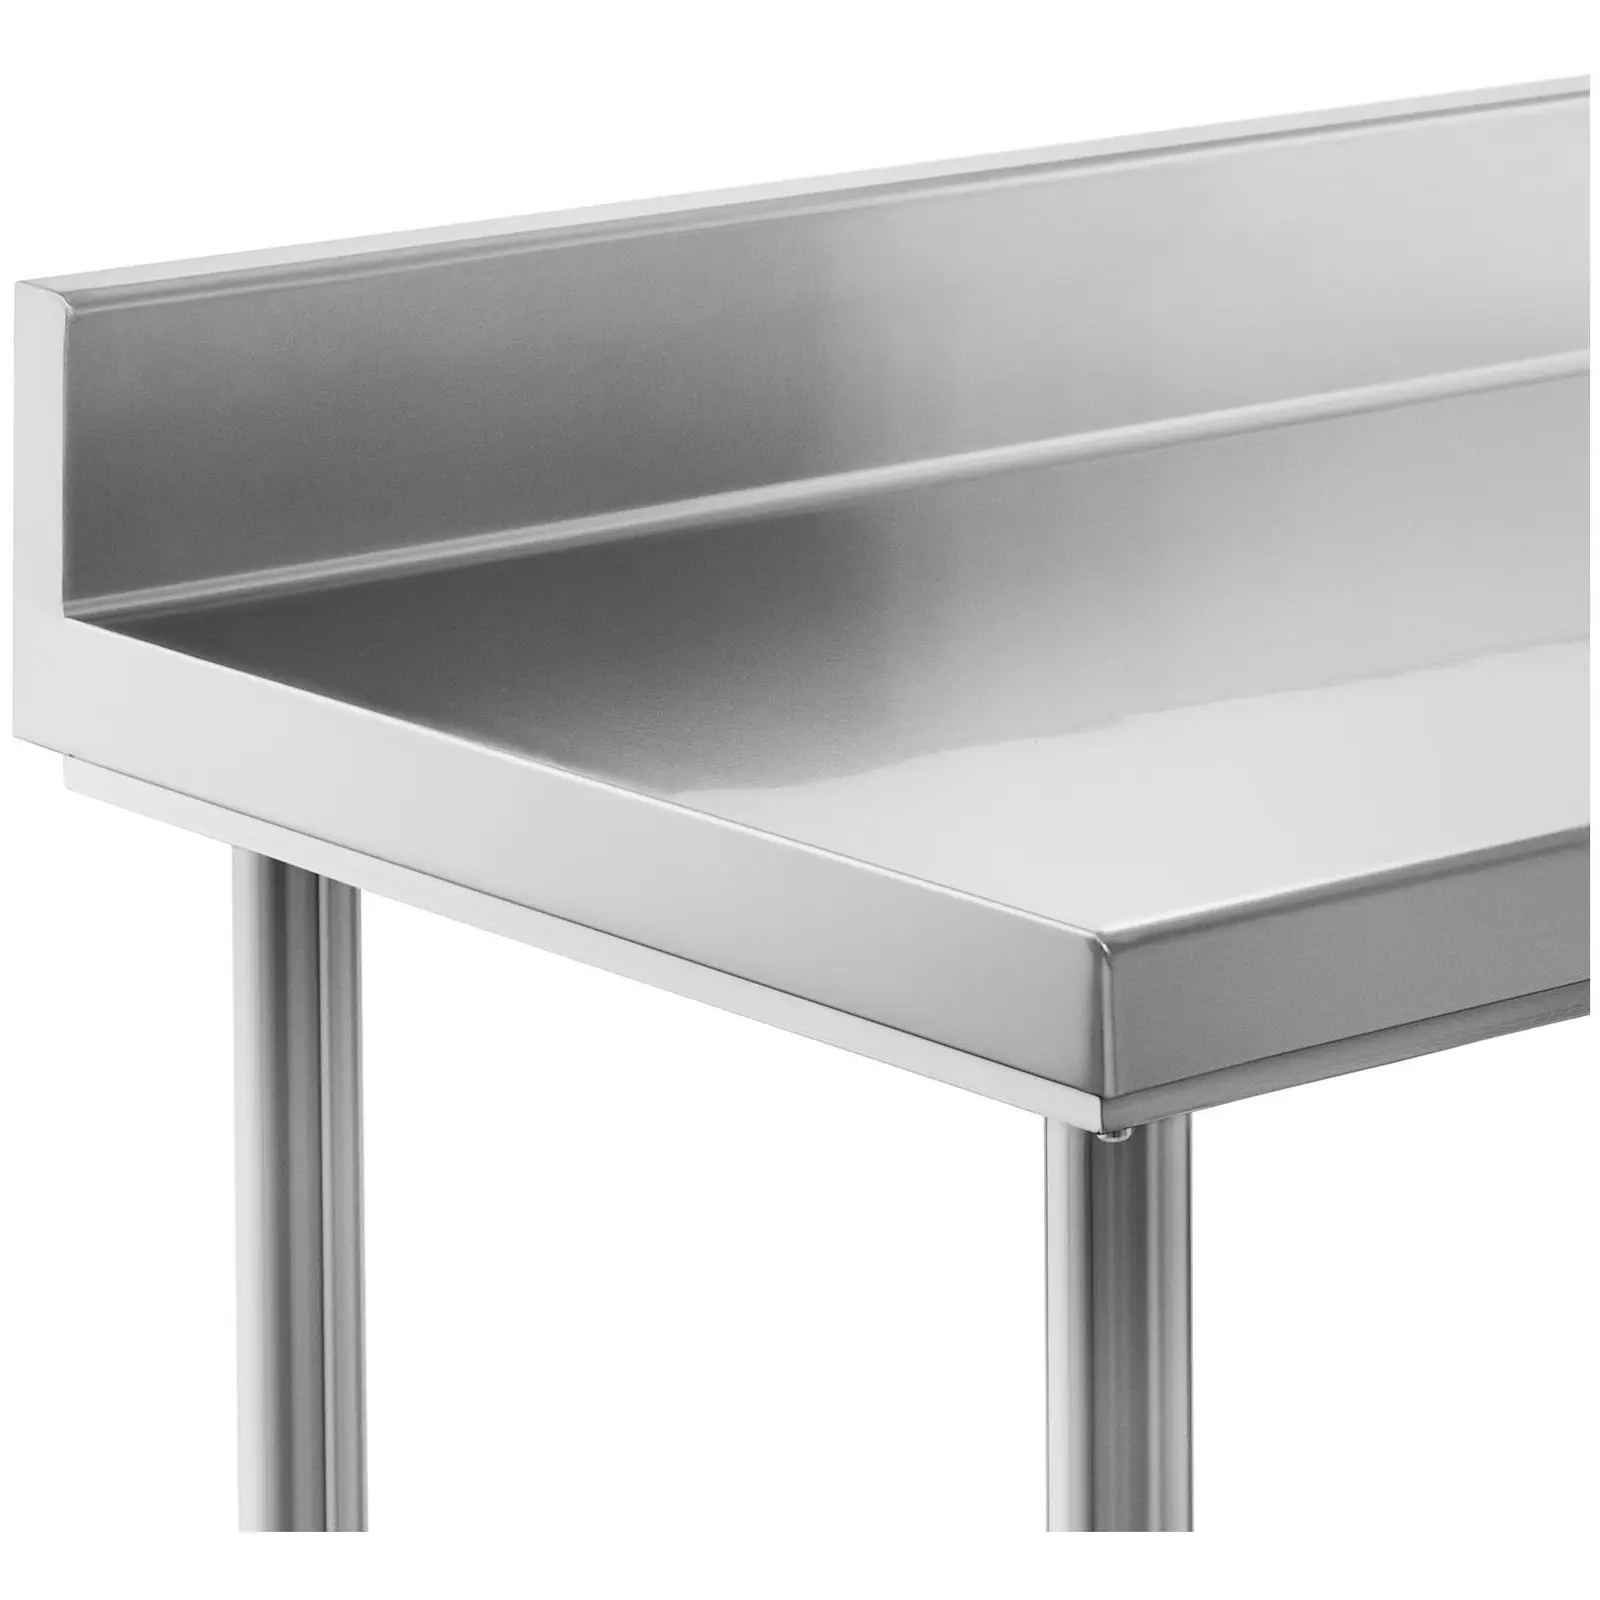 Rozsdamentes acél asztal - 180 x 60 cm - karima - 182 kg-os teherbírás